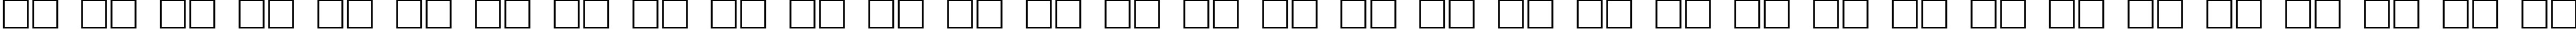 Пример написания русского алфавита шрифтом Granite